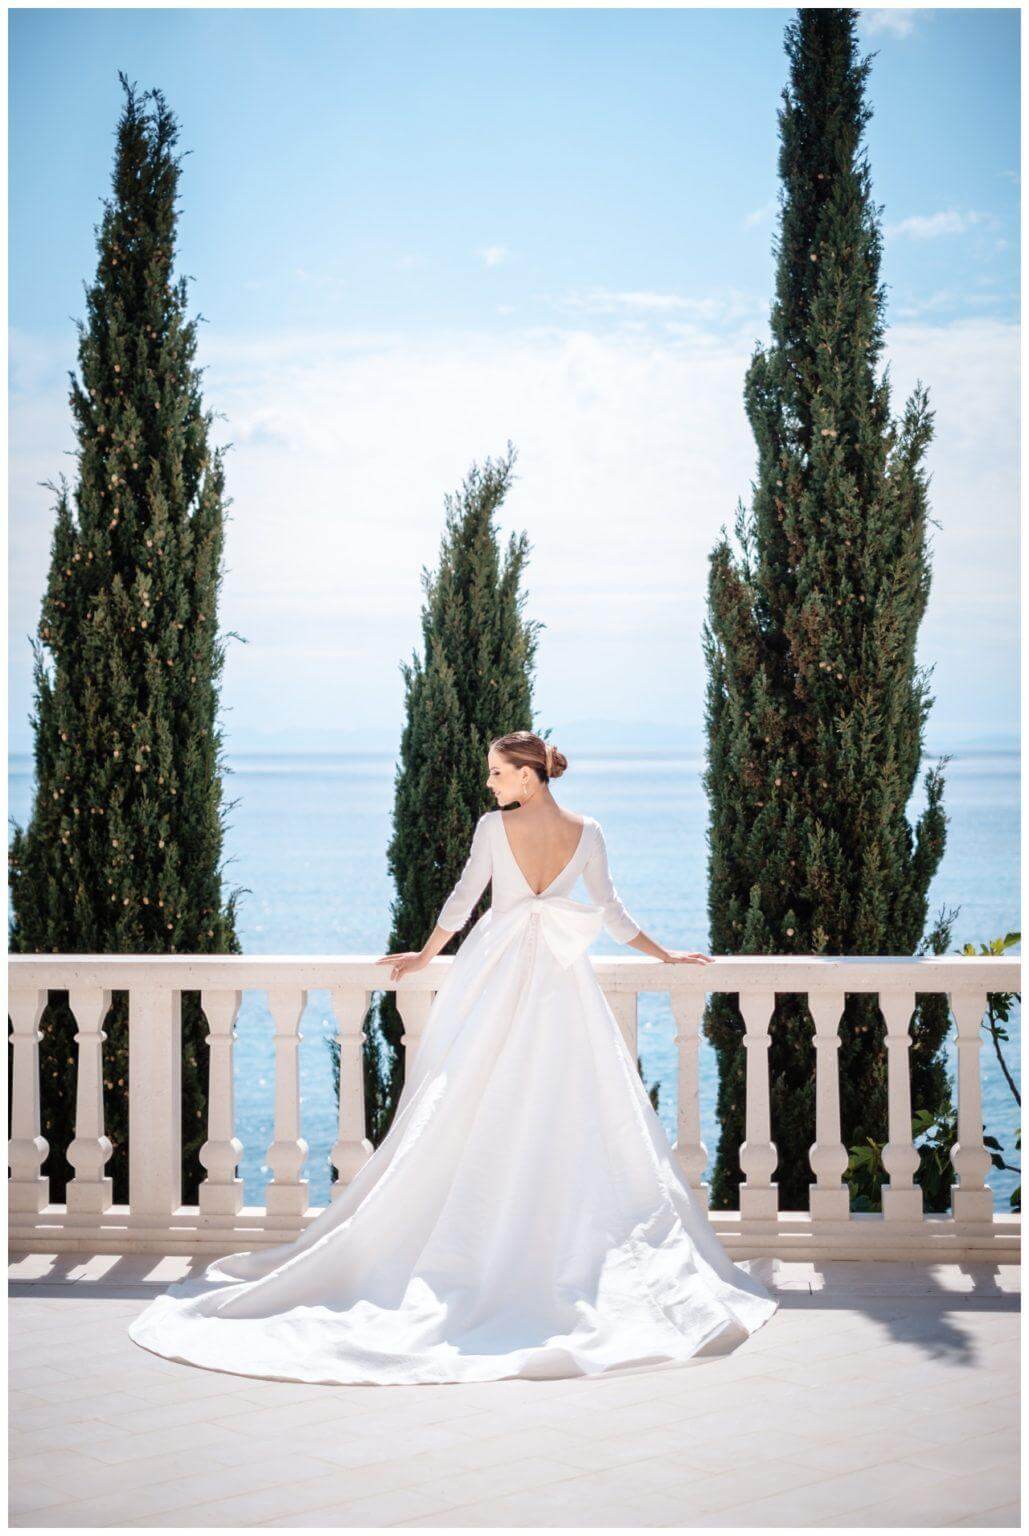 Luxus Hochzeit in weiß Brautkleid mit Schleife Wedding Kroatien, wedding in croatia,hochzeitsplanerin kroatien, hochzeit in kroatien